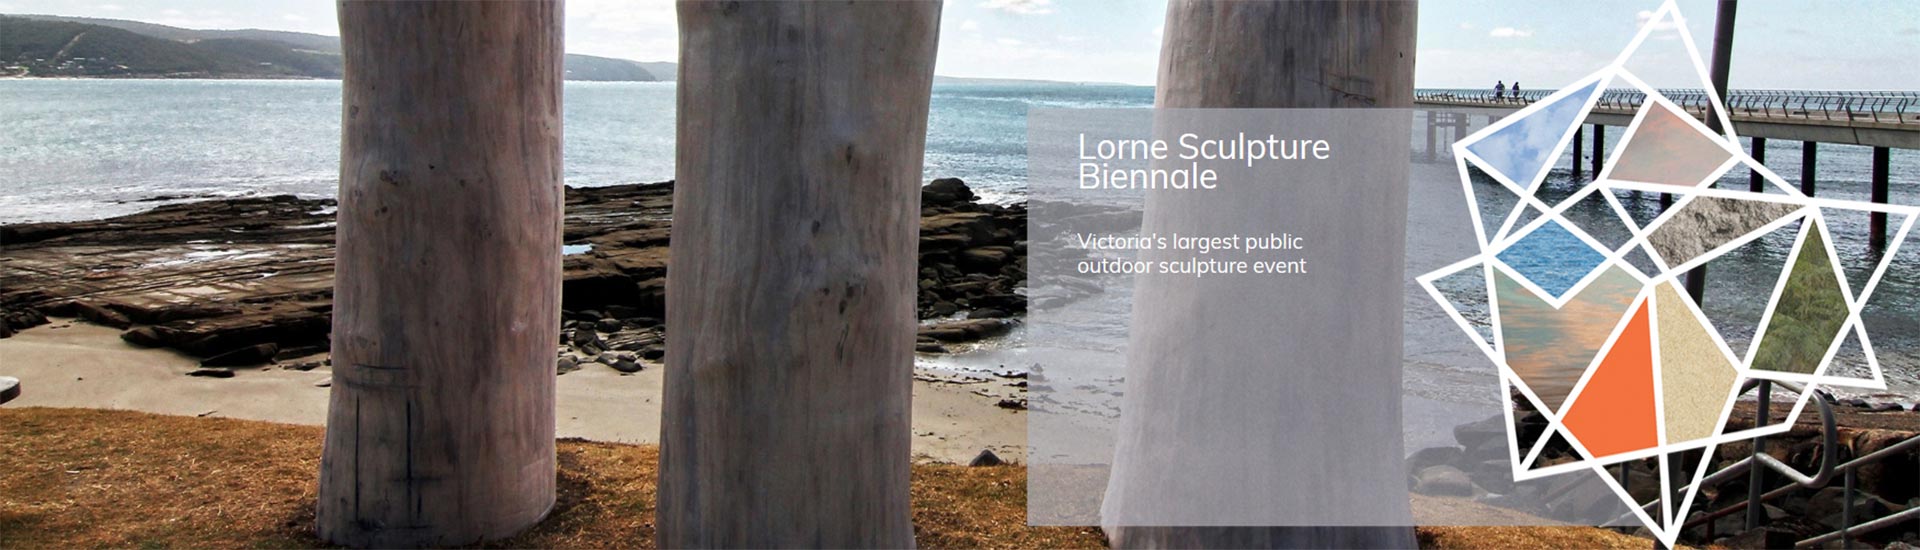 Lorne Sculpture Biennale header